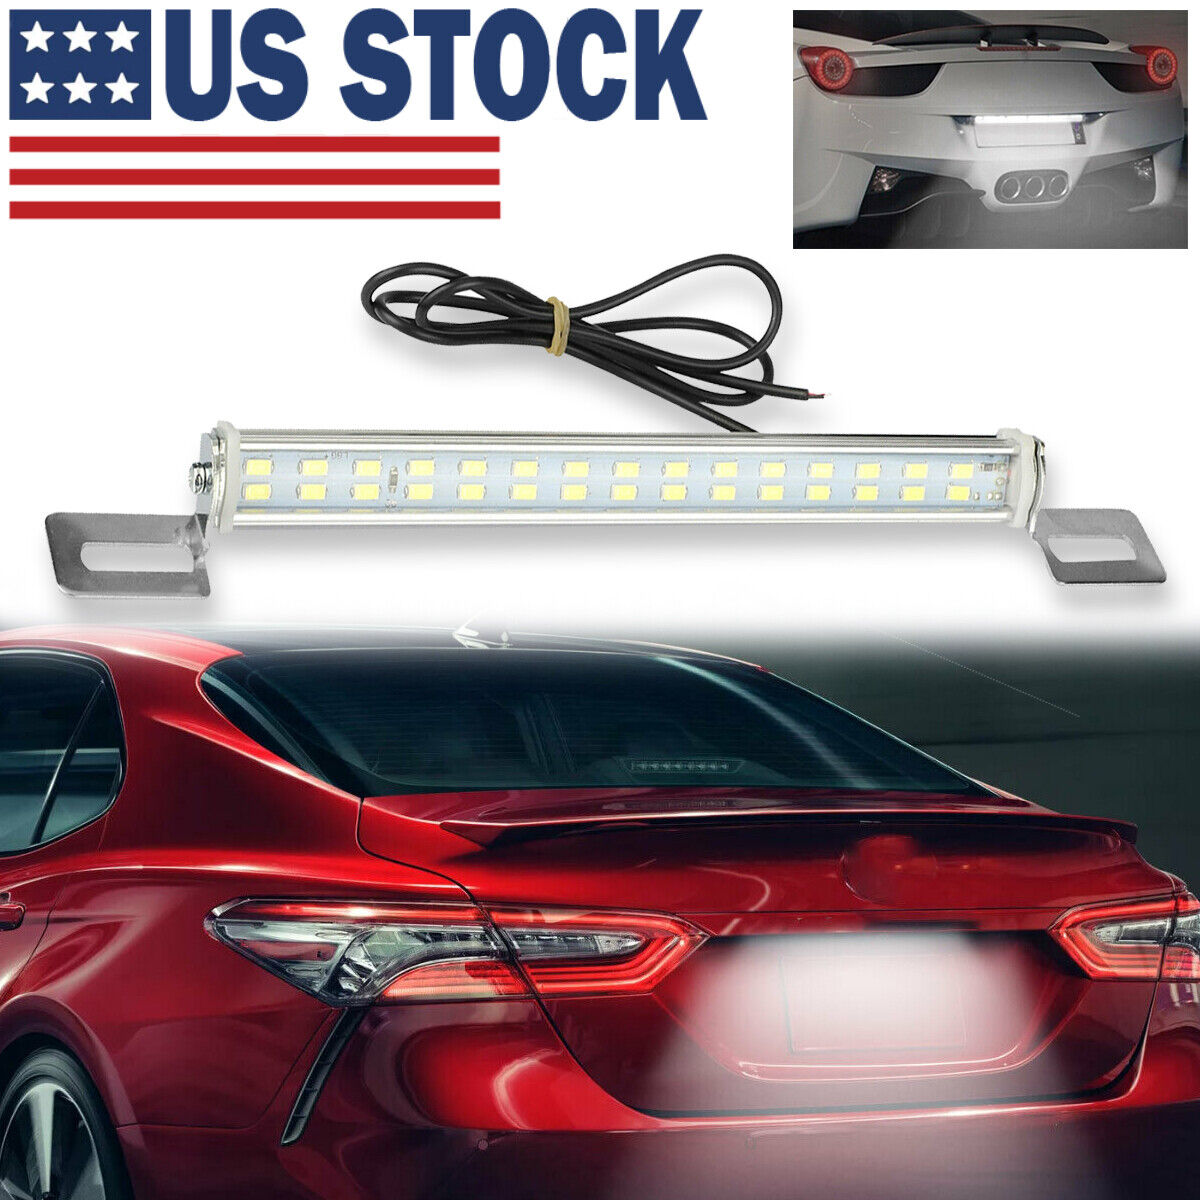 Universal License Plate LED Lamp Back Light Bar For Car SUV Truck RV 6000K White